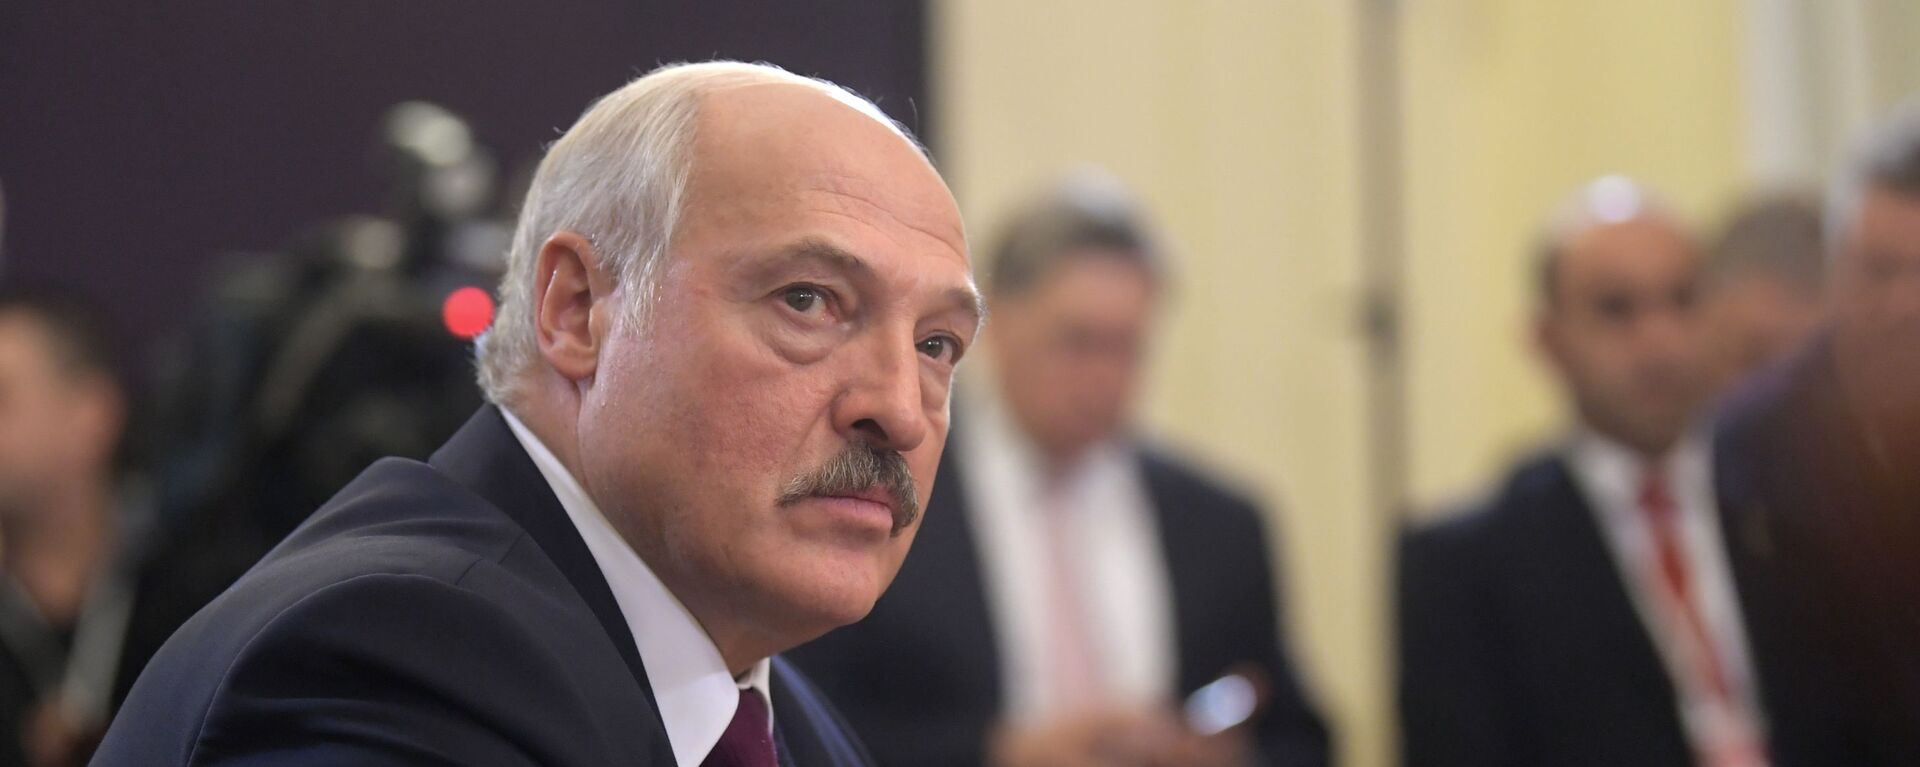 Alexandr Lukashenko, presidente de Bielorrusia (archivo) - Sputnik Mundo, 1920, 25.11.2021